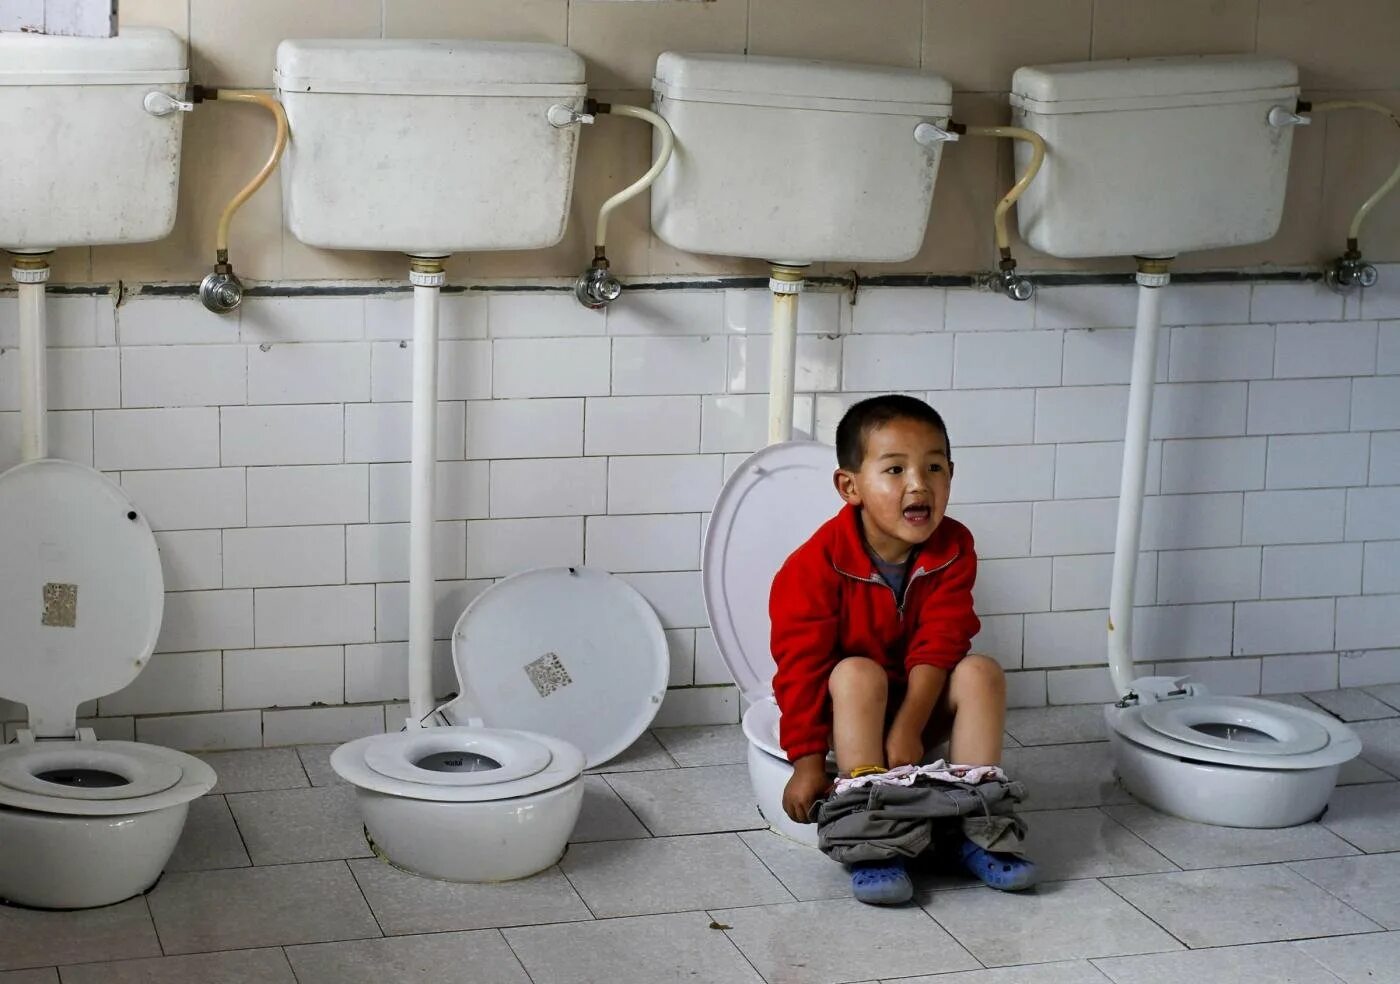 Покажи фотографию туалета. Унитазы общественных туалетов для людей. Школьный унитаз. Туалетный мальчик. Туалет в детском доме.